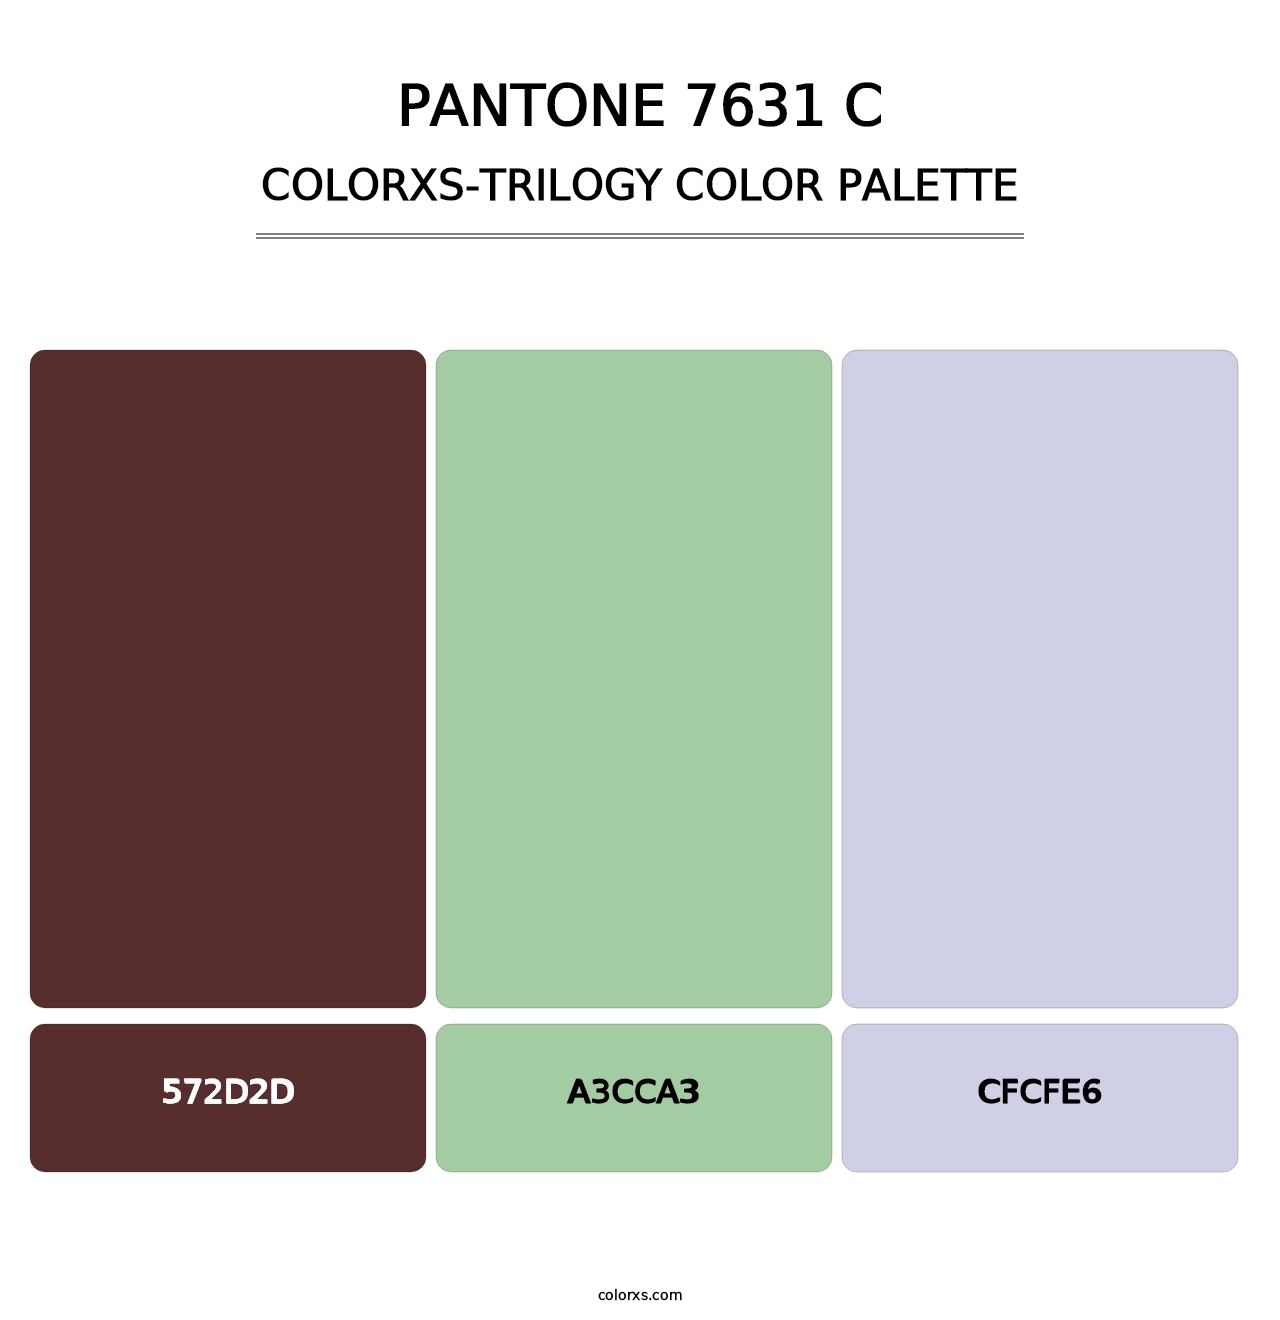 PANTONE 7631 C - Colorxs Trilogy Palette